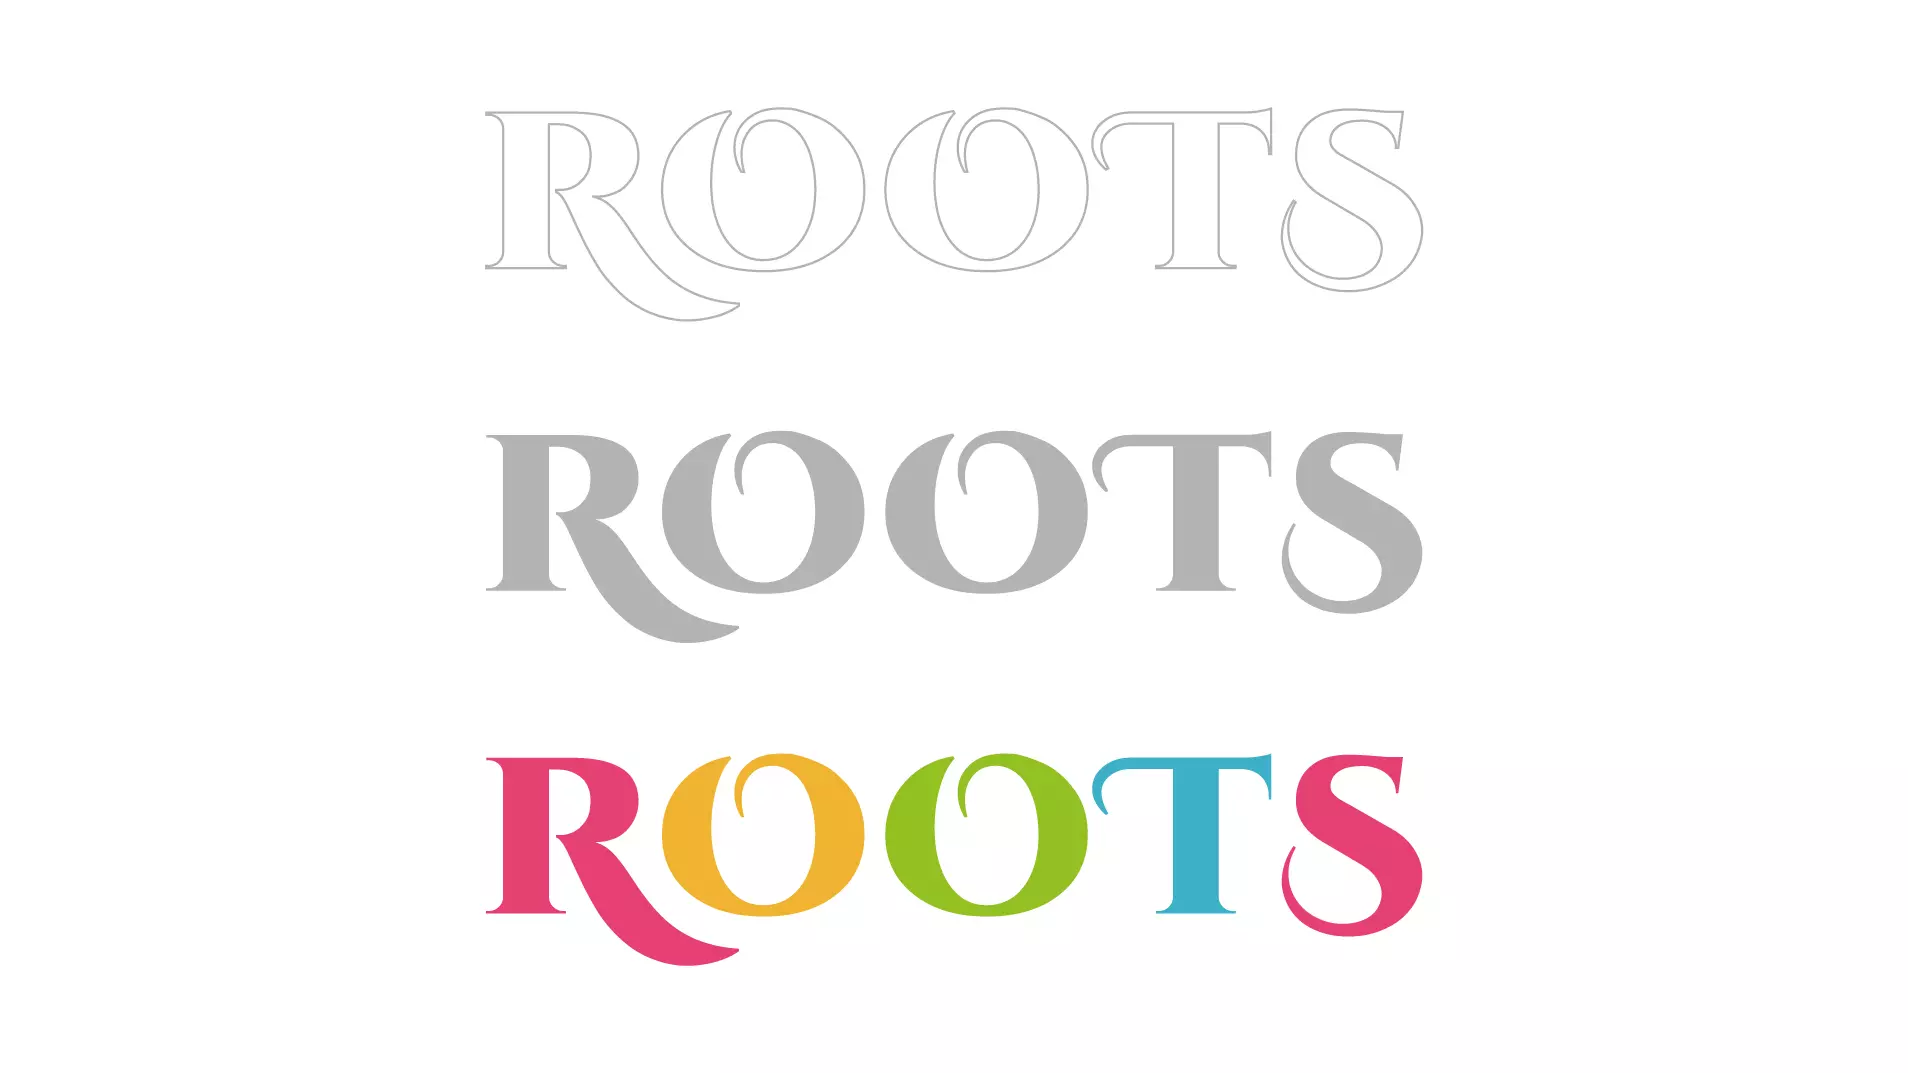 propuesta-roots-2